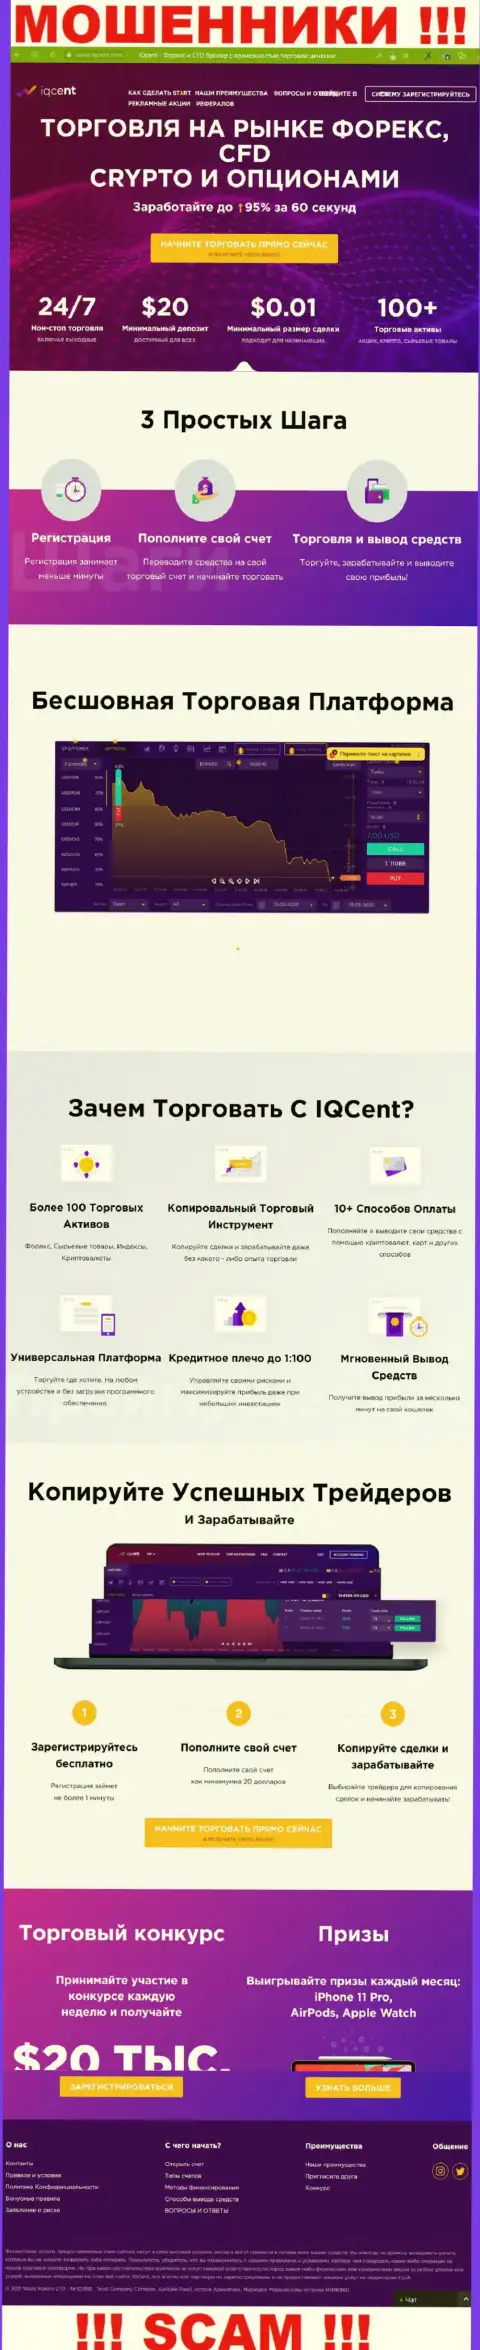 Официальный сайт кидал IQCent, заполненный инфой для лохов